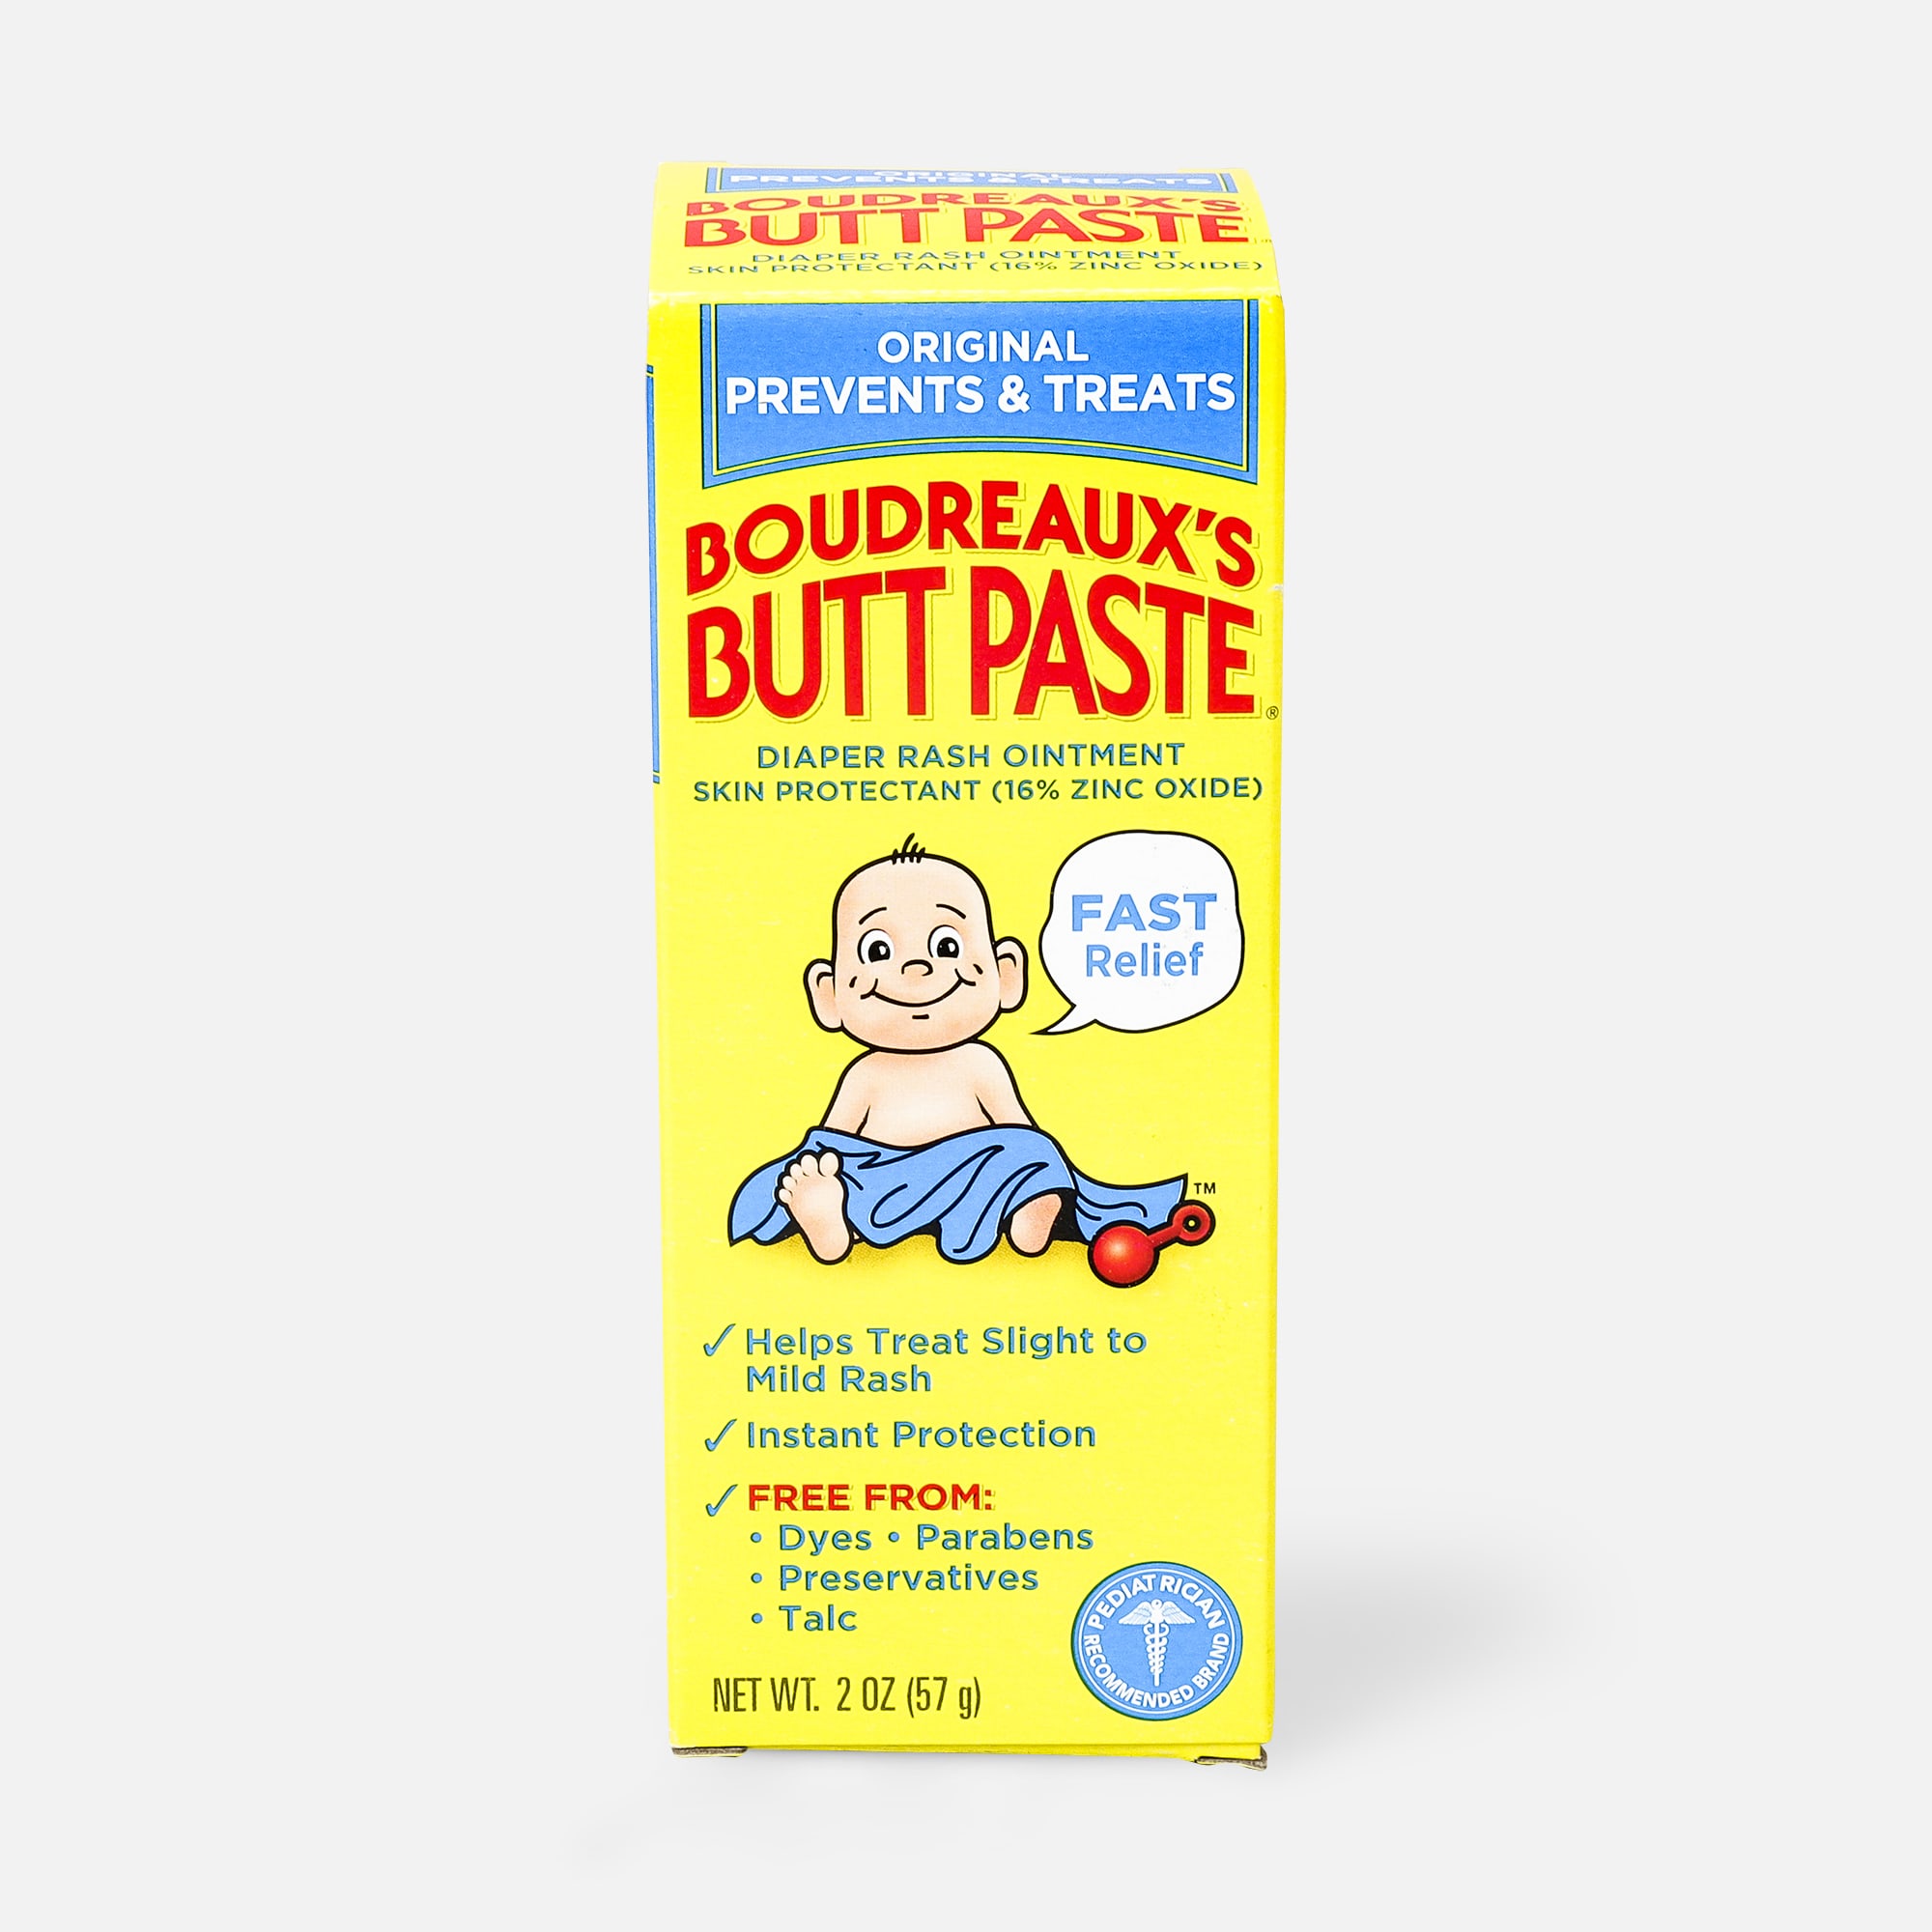 Boudreaux's Original Butt Paste